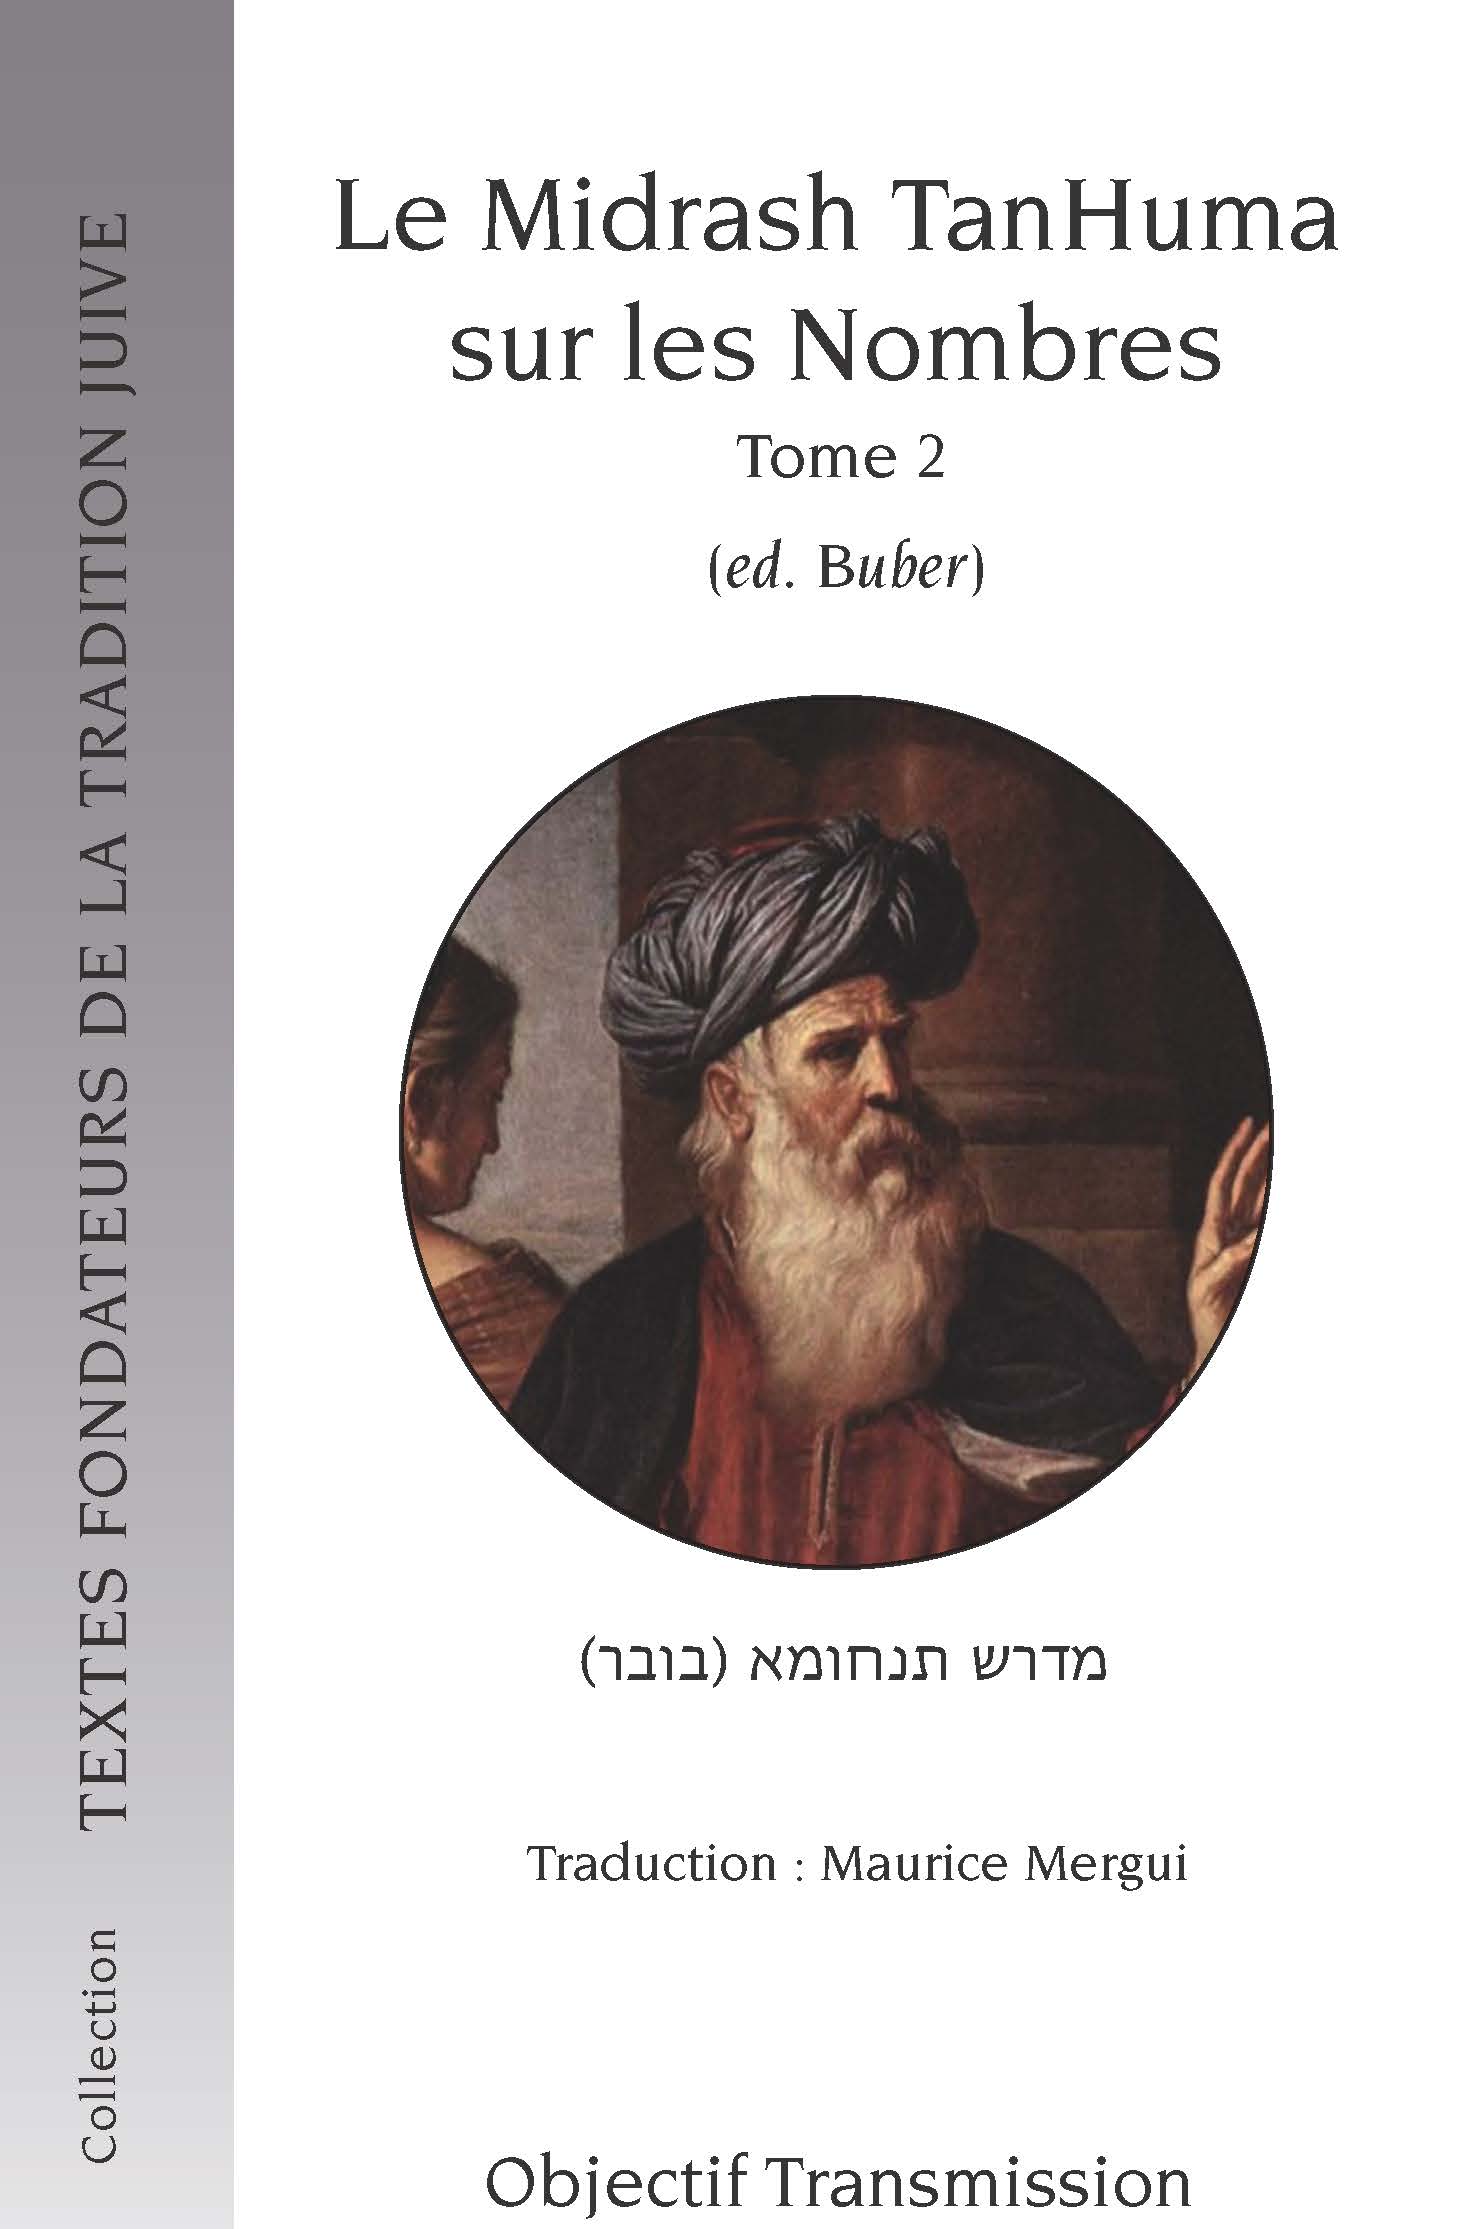 Le Midrash TanHuma sur les Nombres (version Buber) Tome 2 